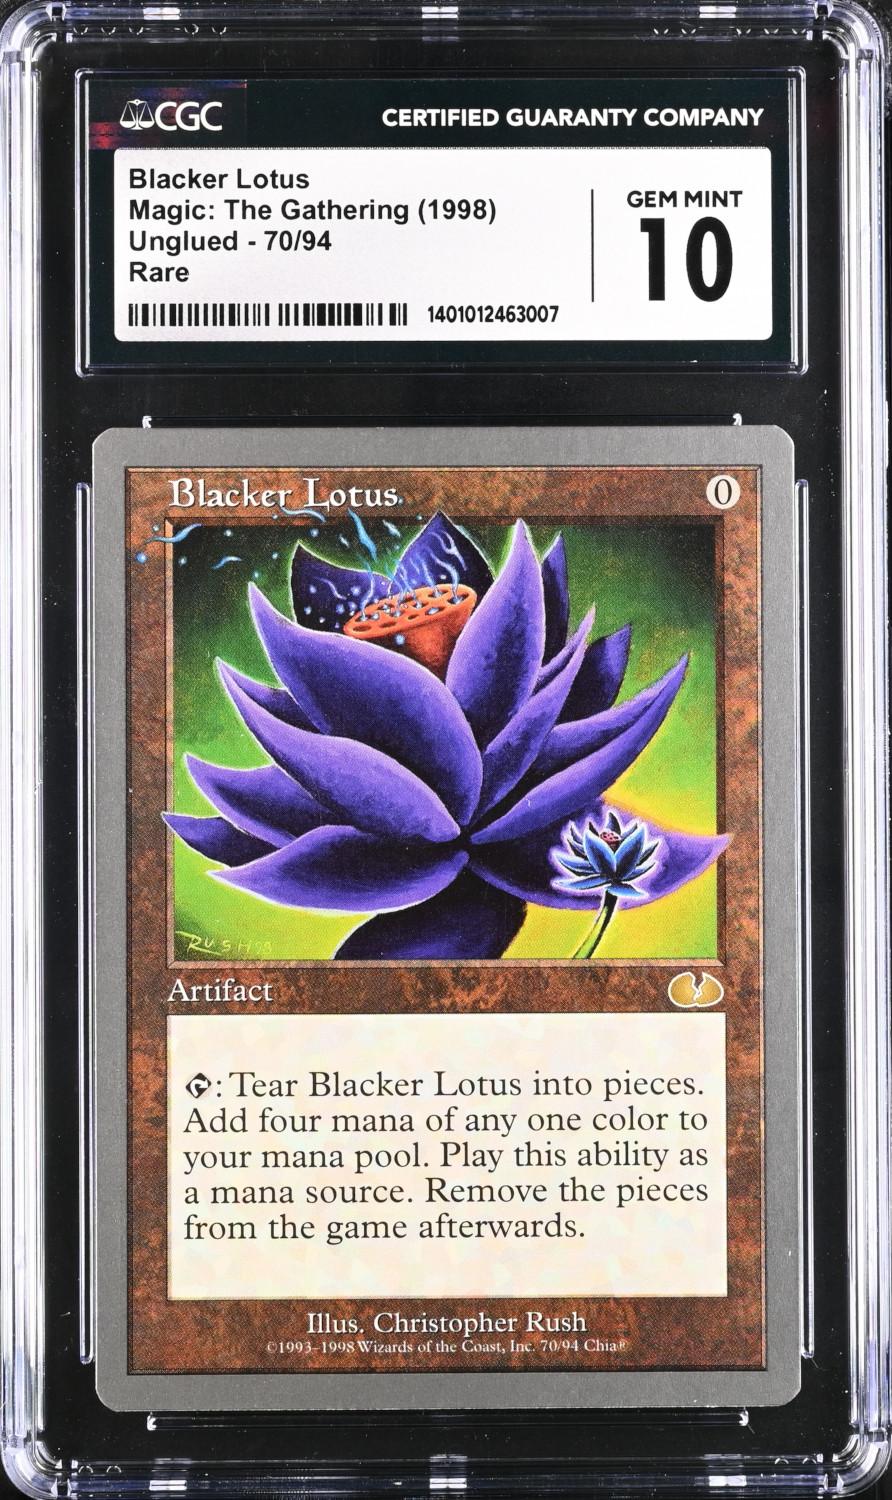 Blacker Lotus (Unglued - CGC 10) - 1401012463007